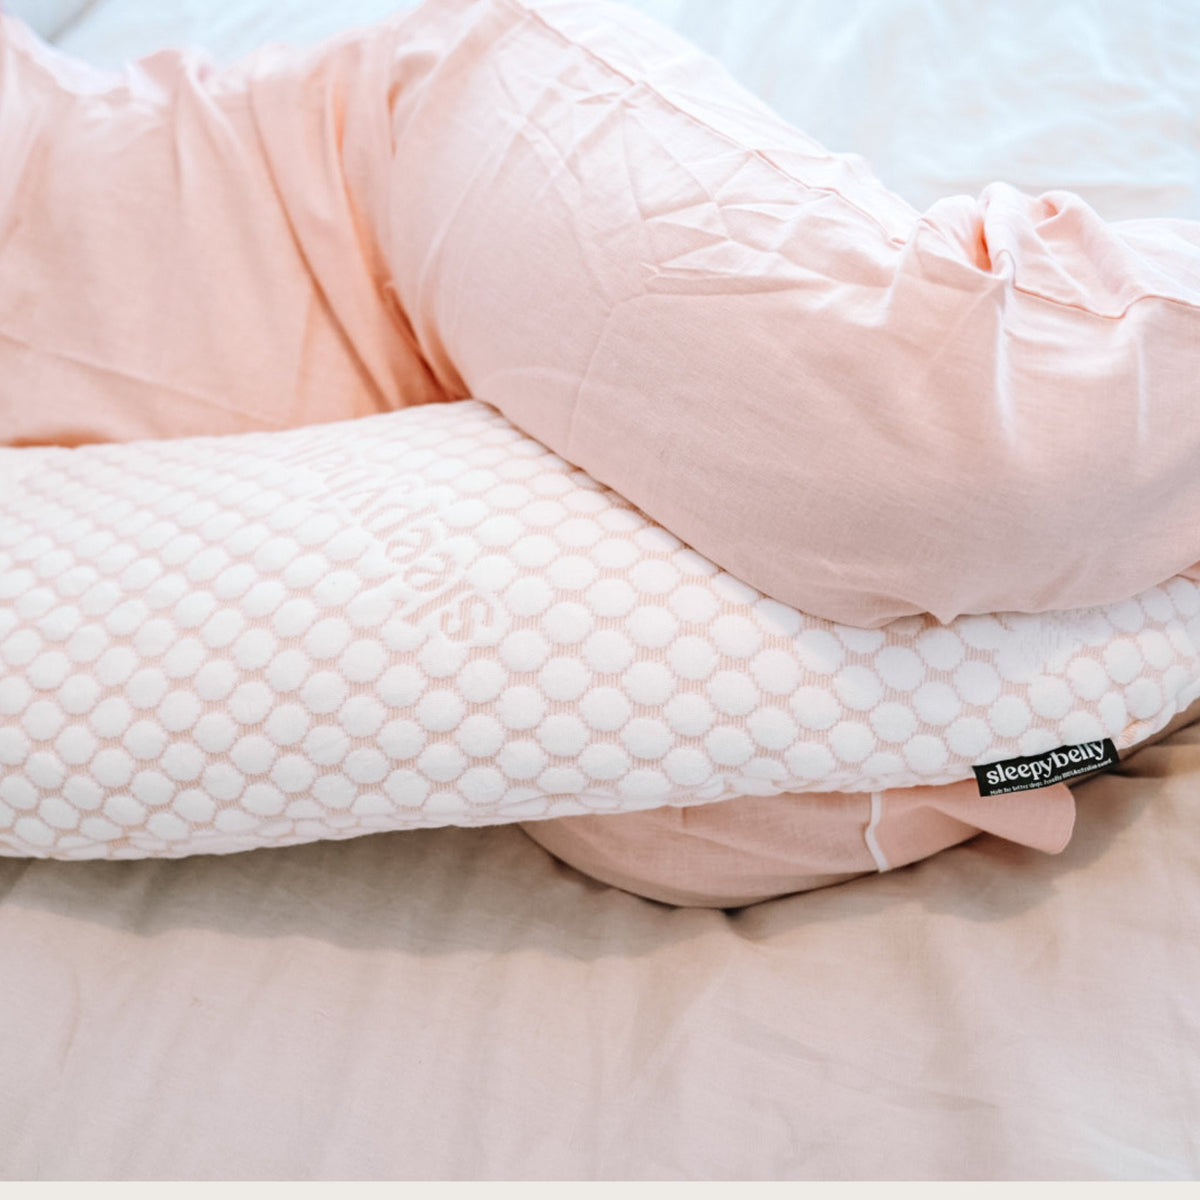 Sleepybelly Pregnancy Pillow - Sleepybelly